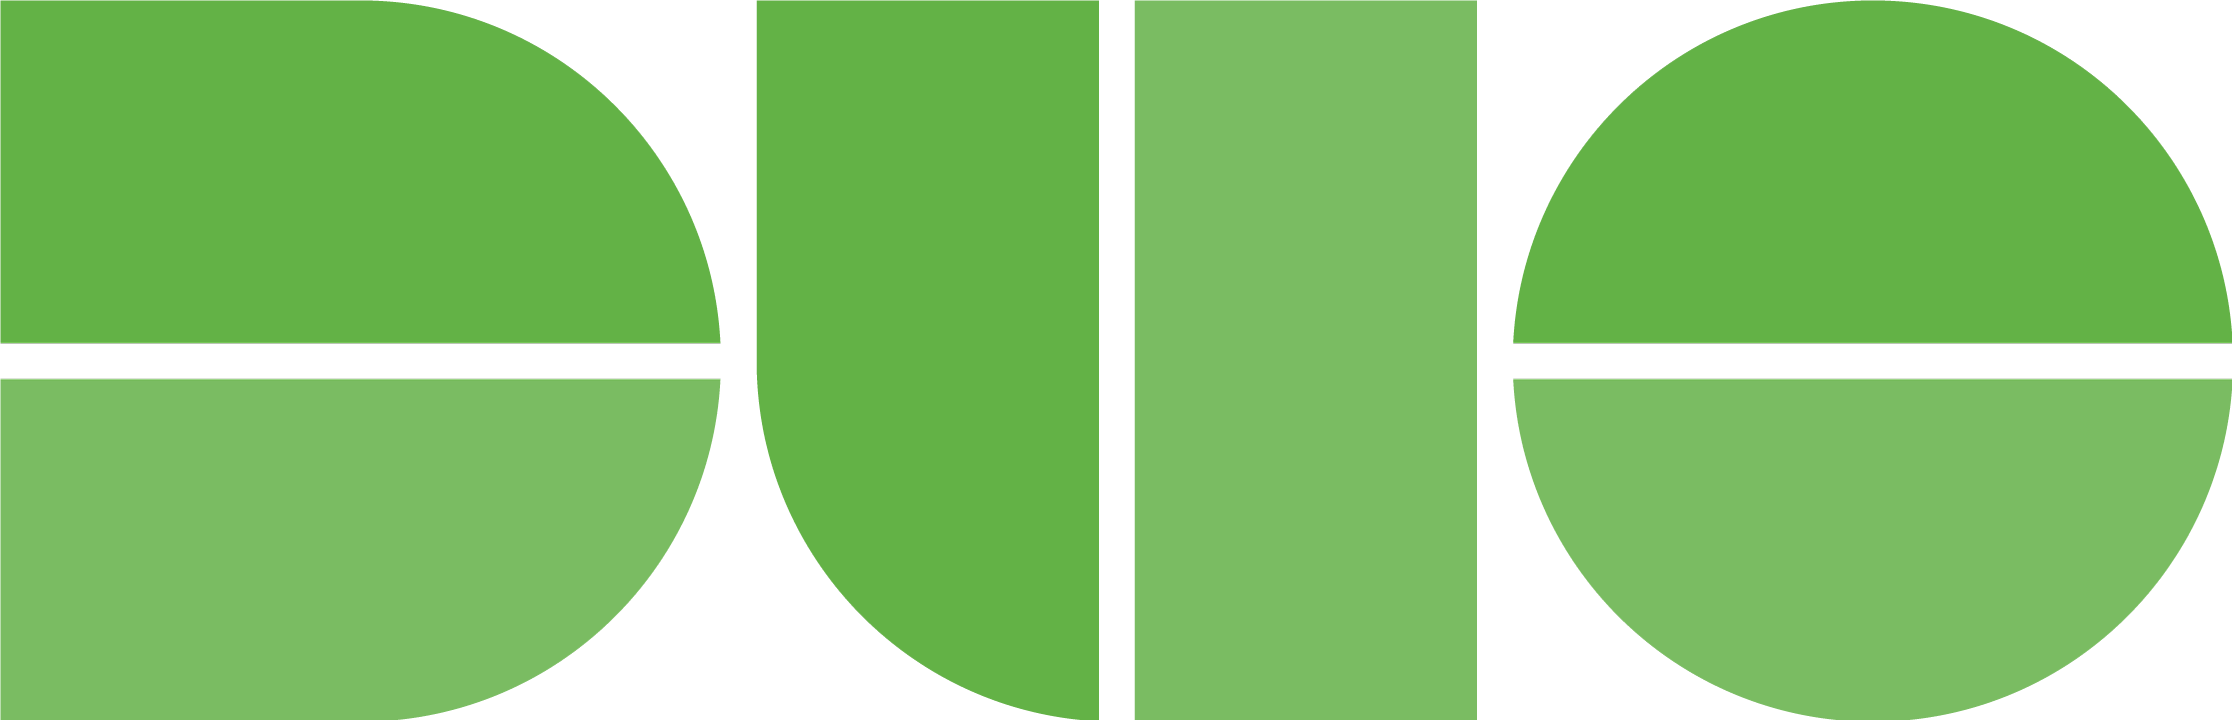 Duo logo in green